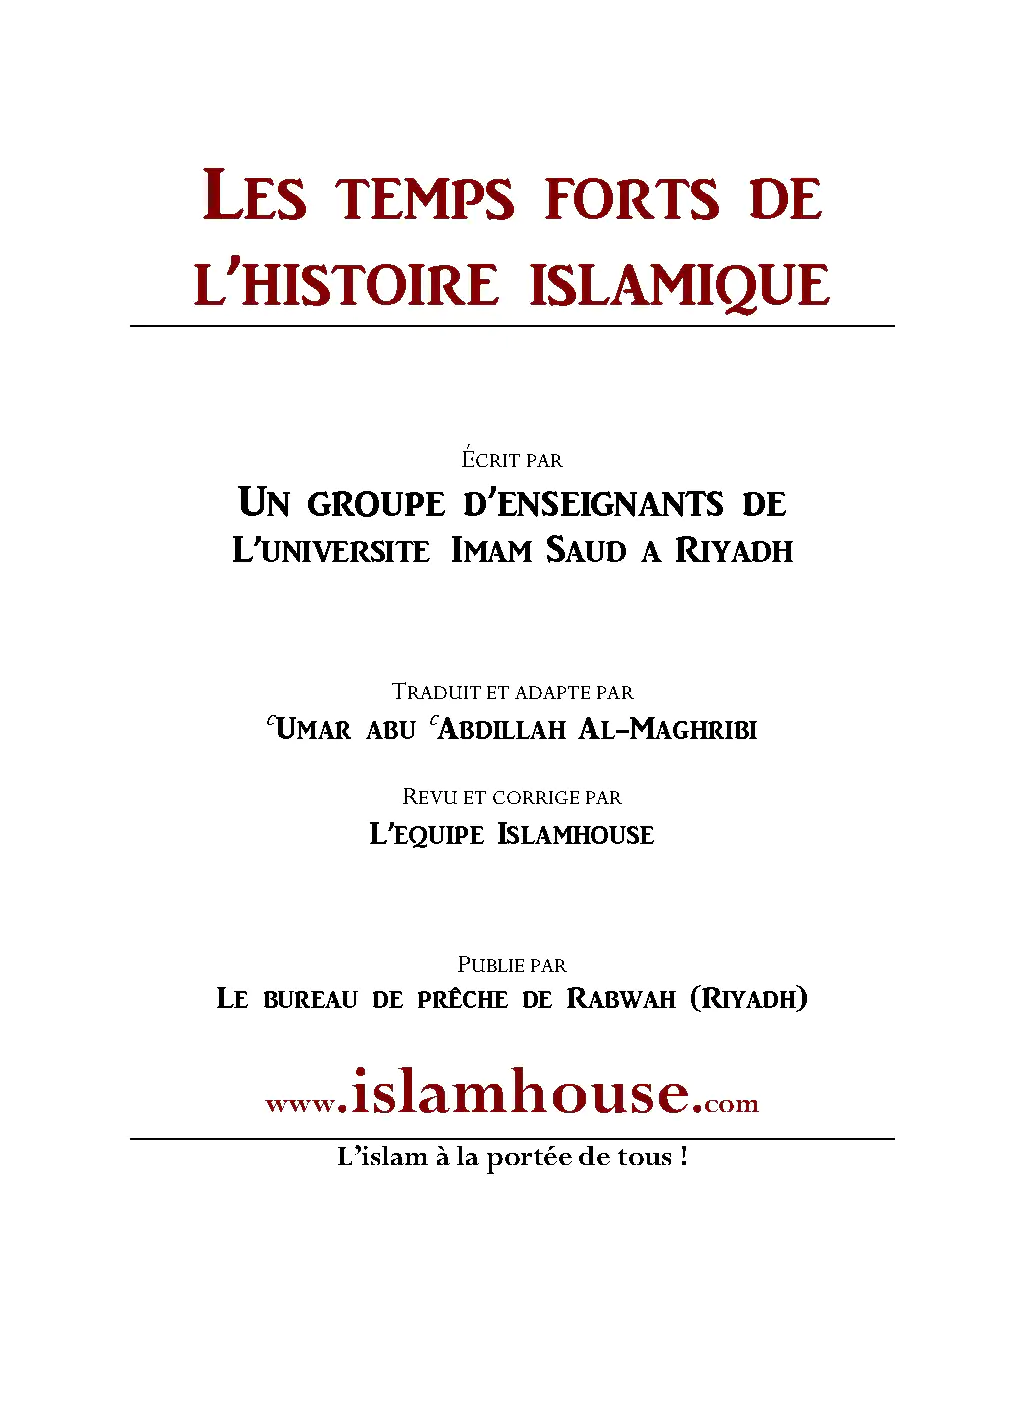 Les temps forts de l’histoire islamique (24-27) : De l’empire ottoman à nos jours